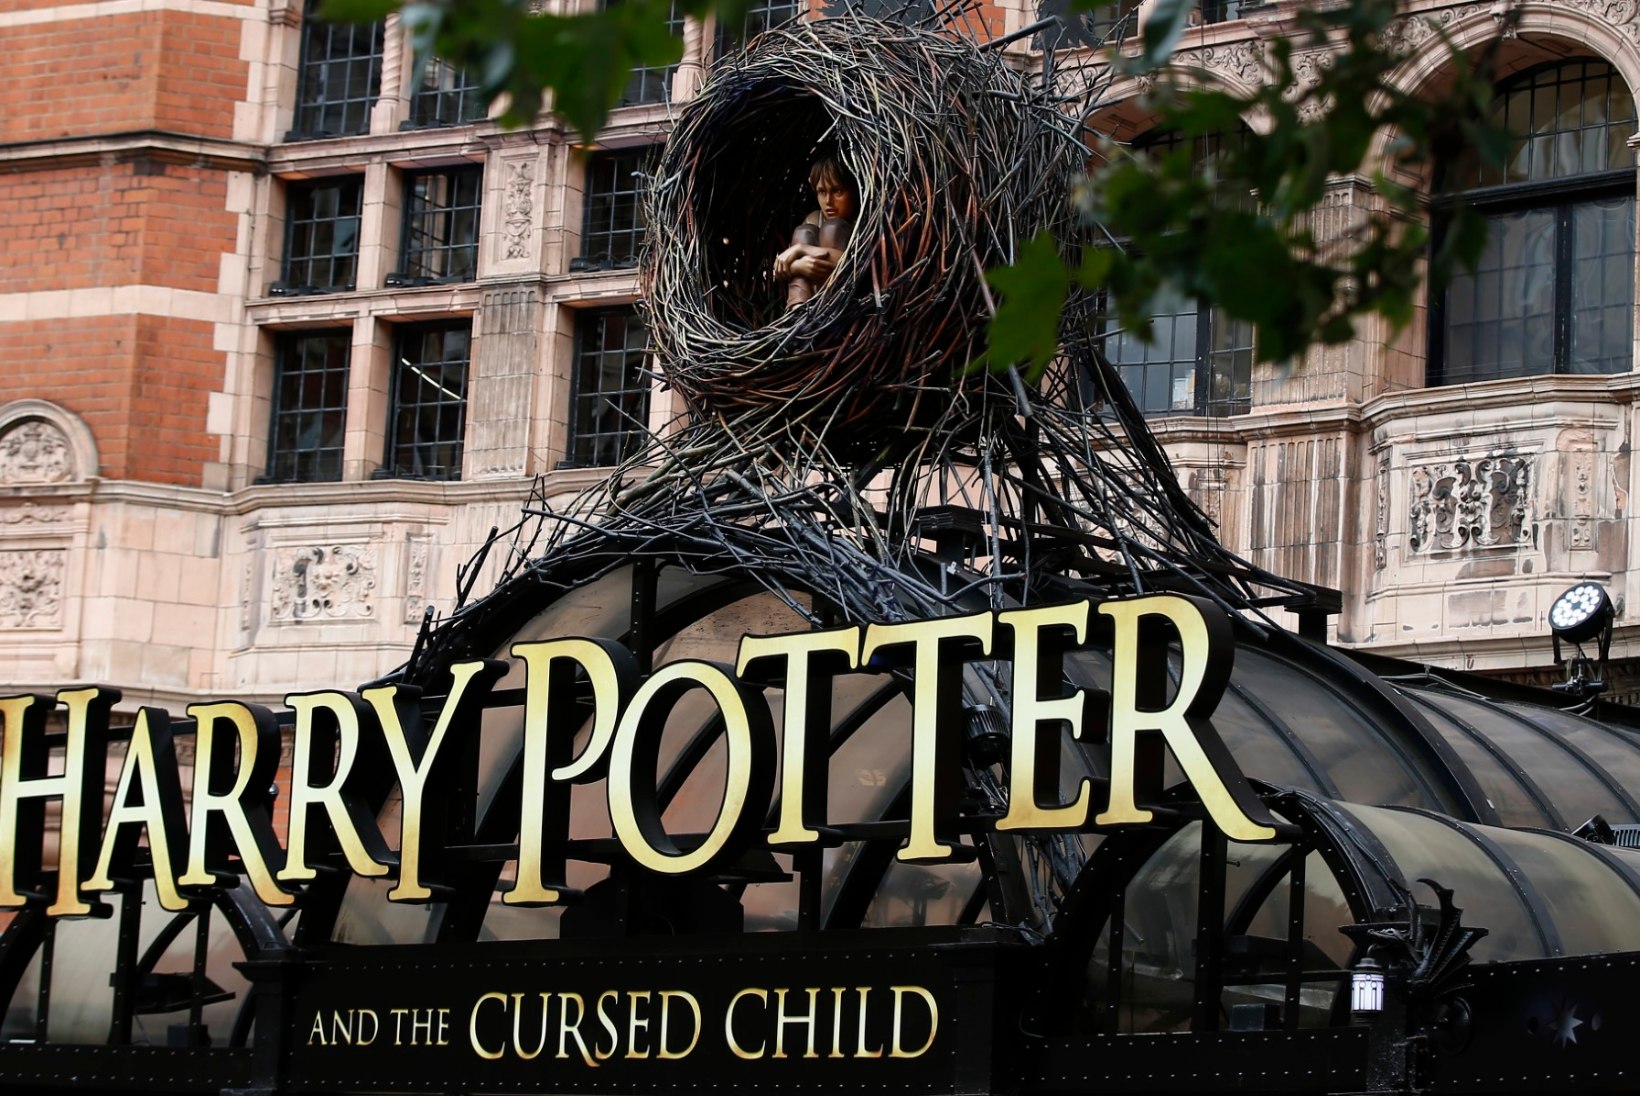 POTTERI-MAANIA: uue Harry Potteri raamatu ilmumisööl võtavad tulihingelised fännid poe ukse taha järjekorda